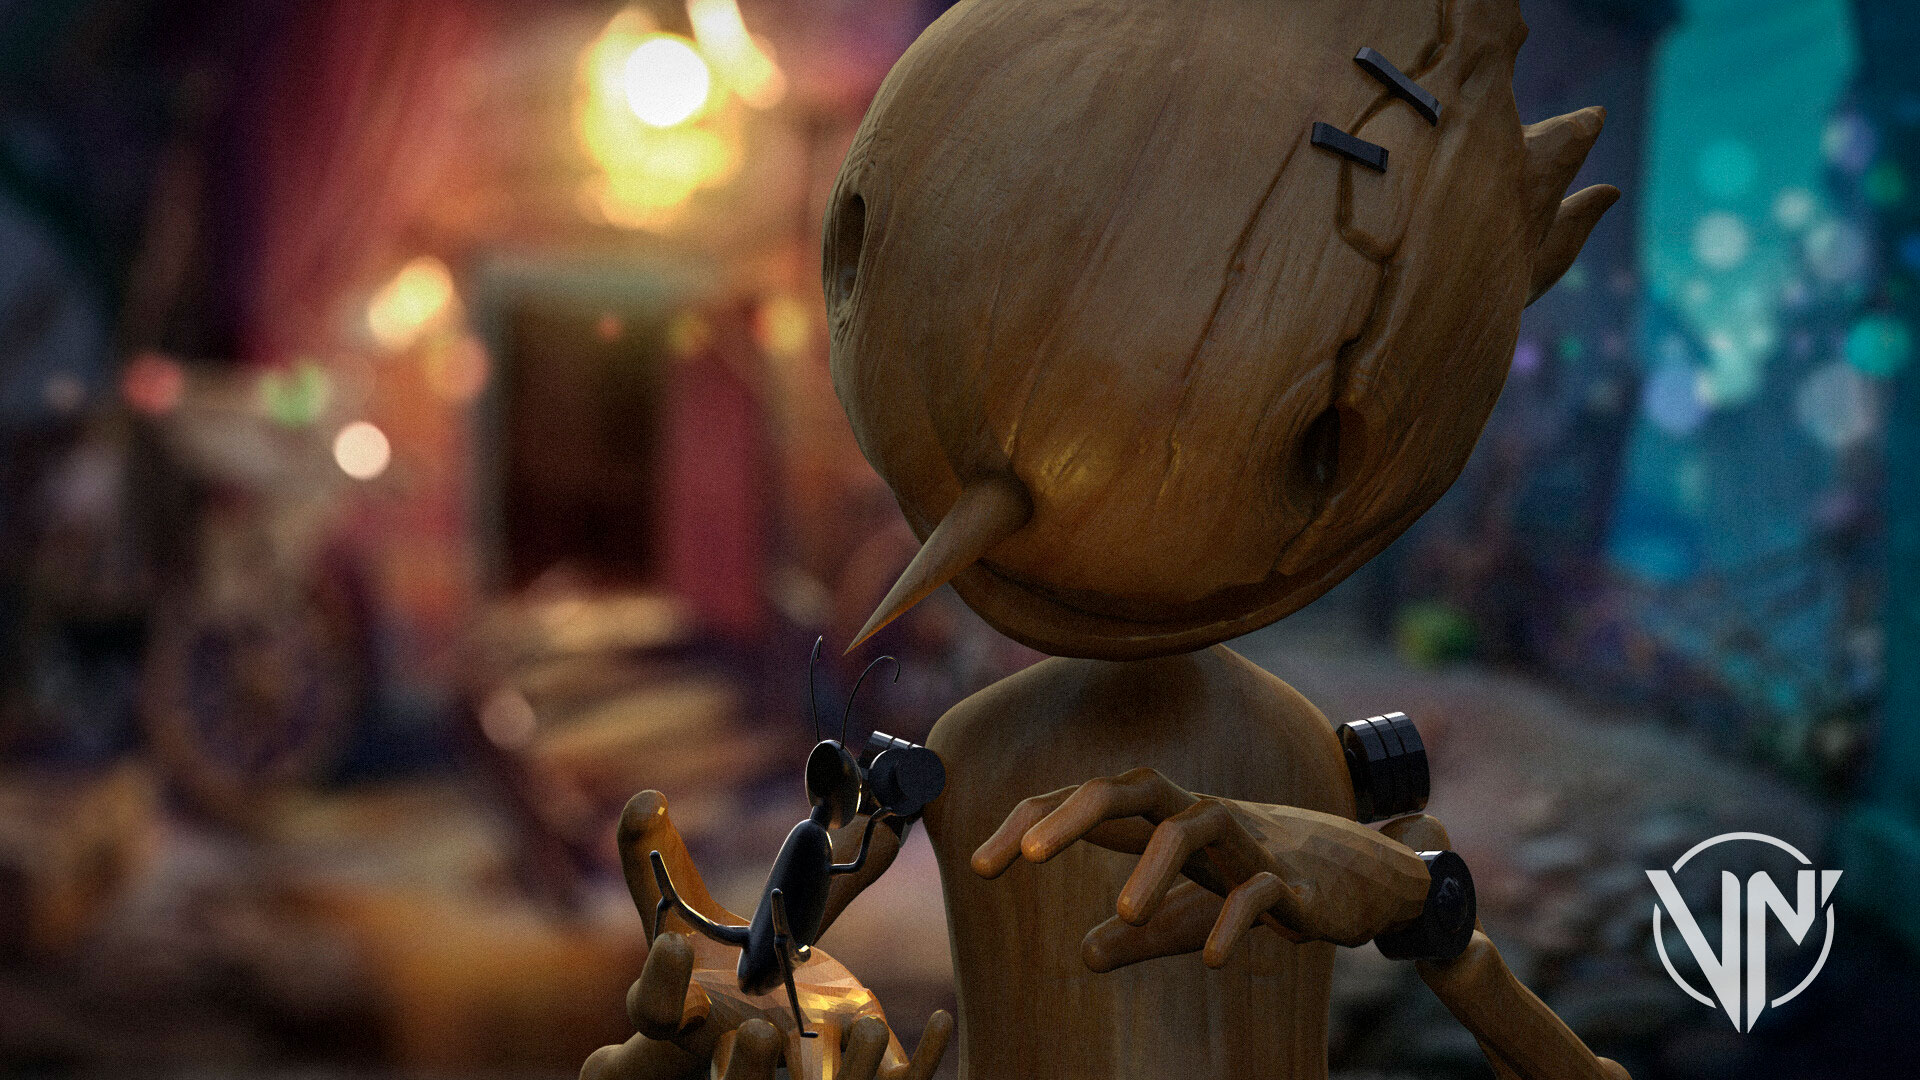 Conoce un adelanto de "Pinocchio" la nueva película de Guillermo del Toro